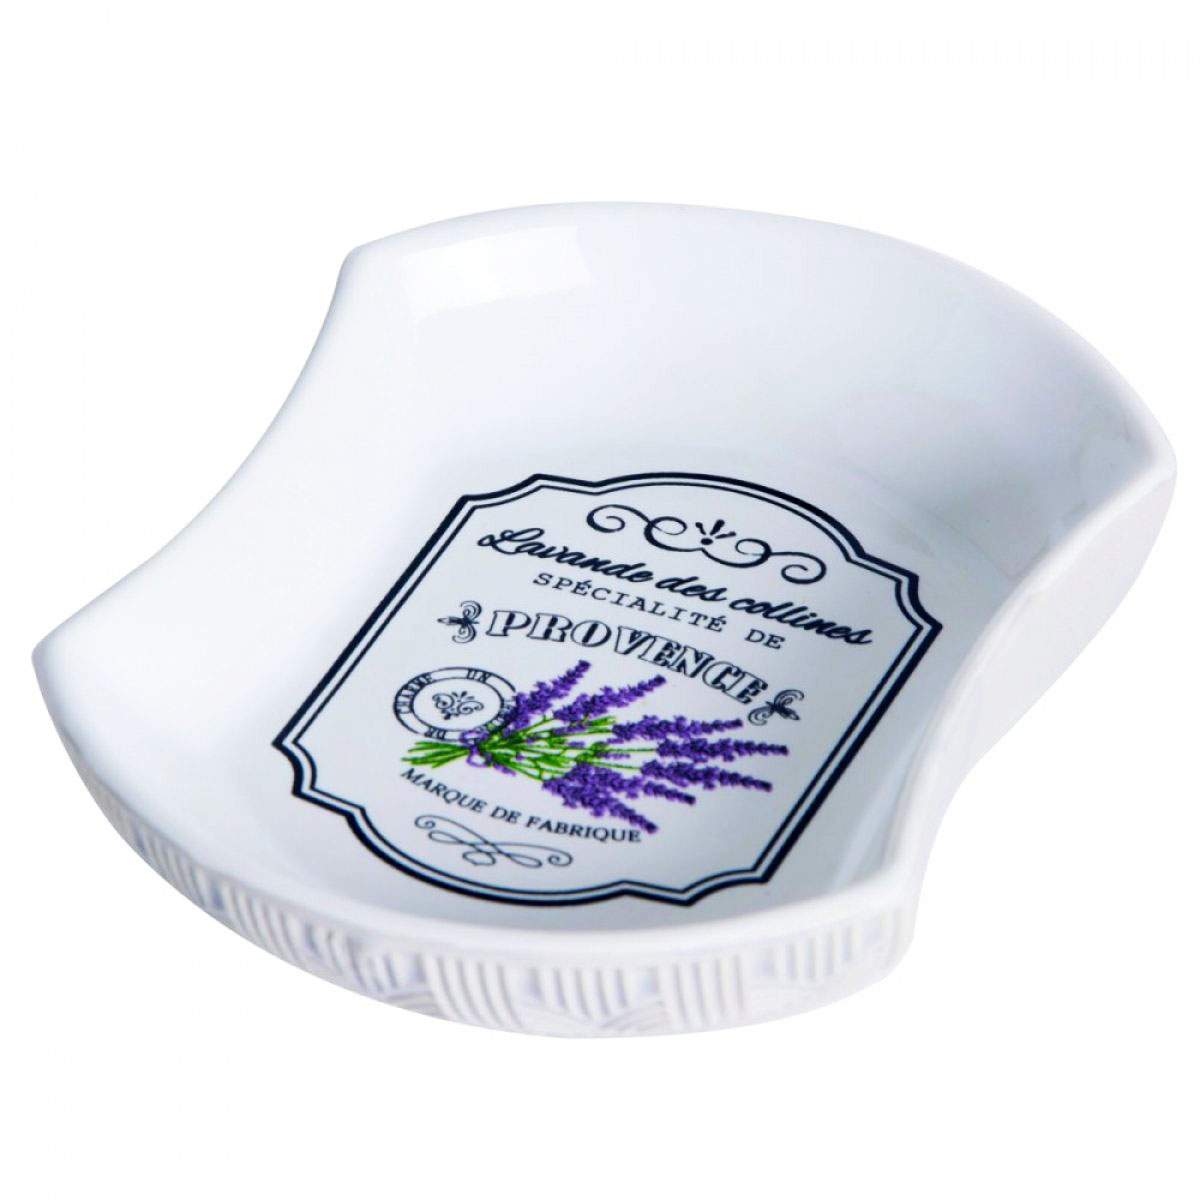 Porte-savon céramique \'Provence\' blanc violet (lavande des collines) - 13x10 cm - [A2833]